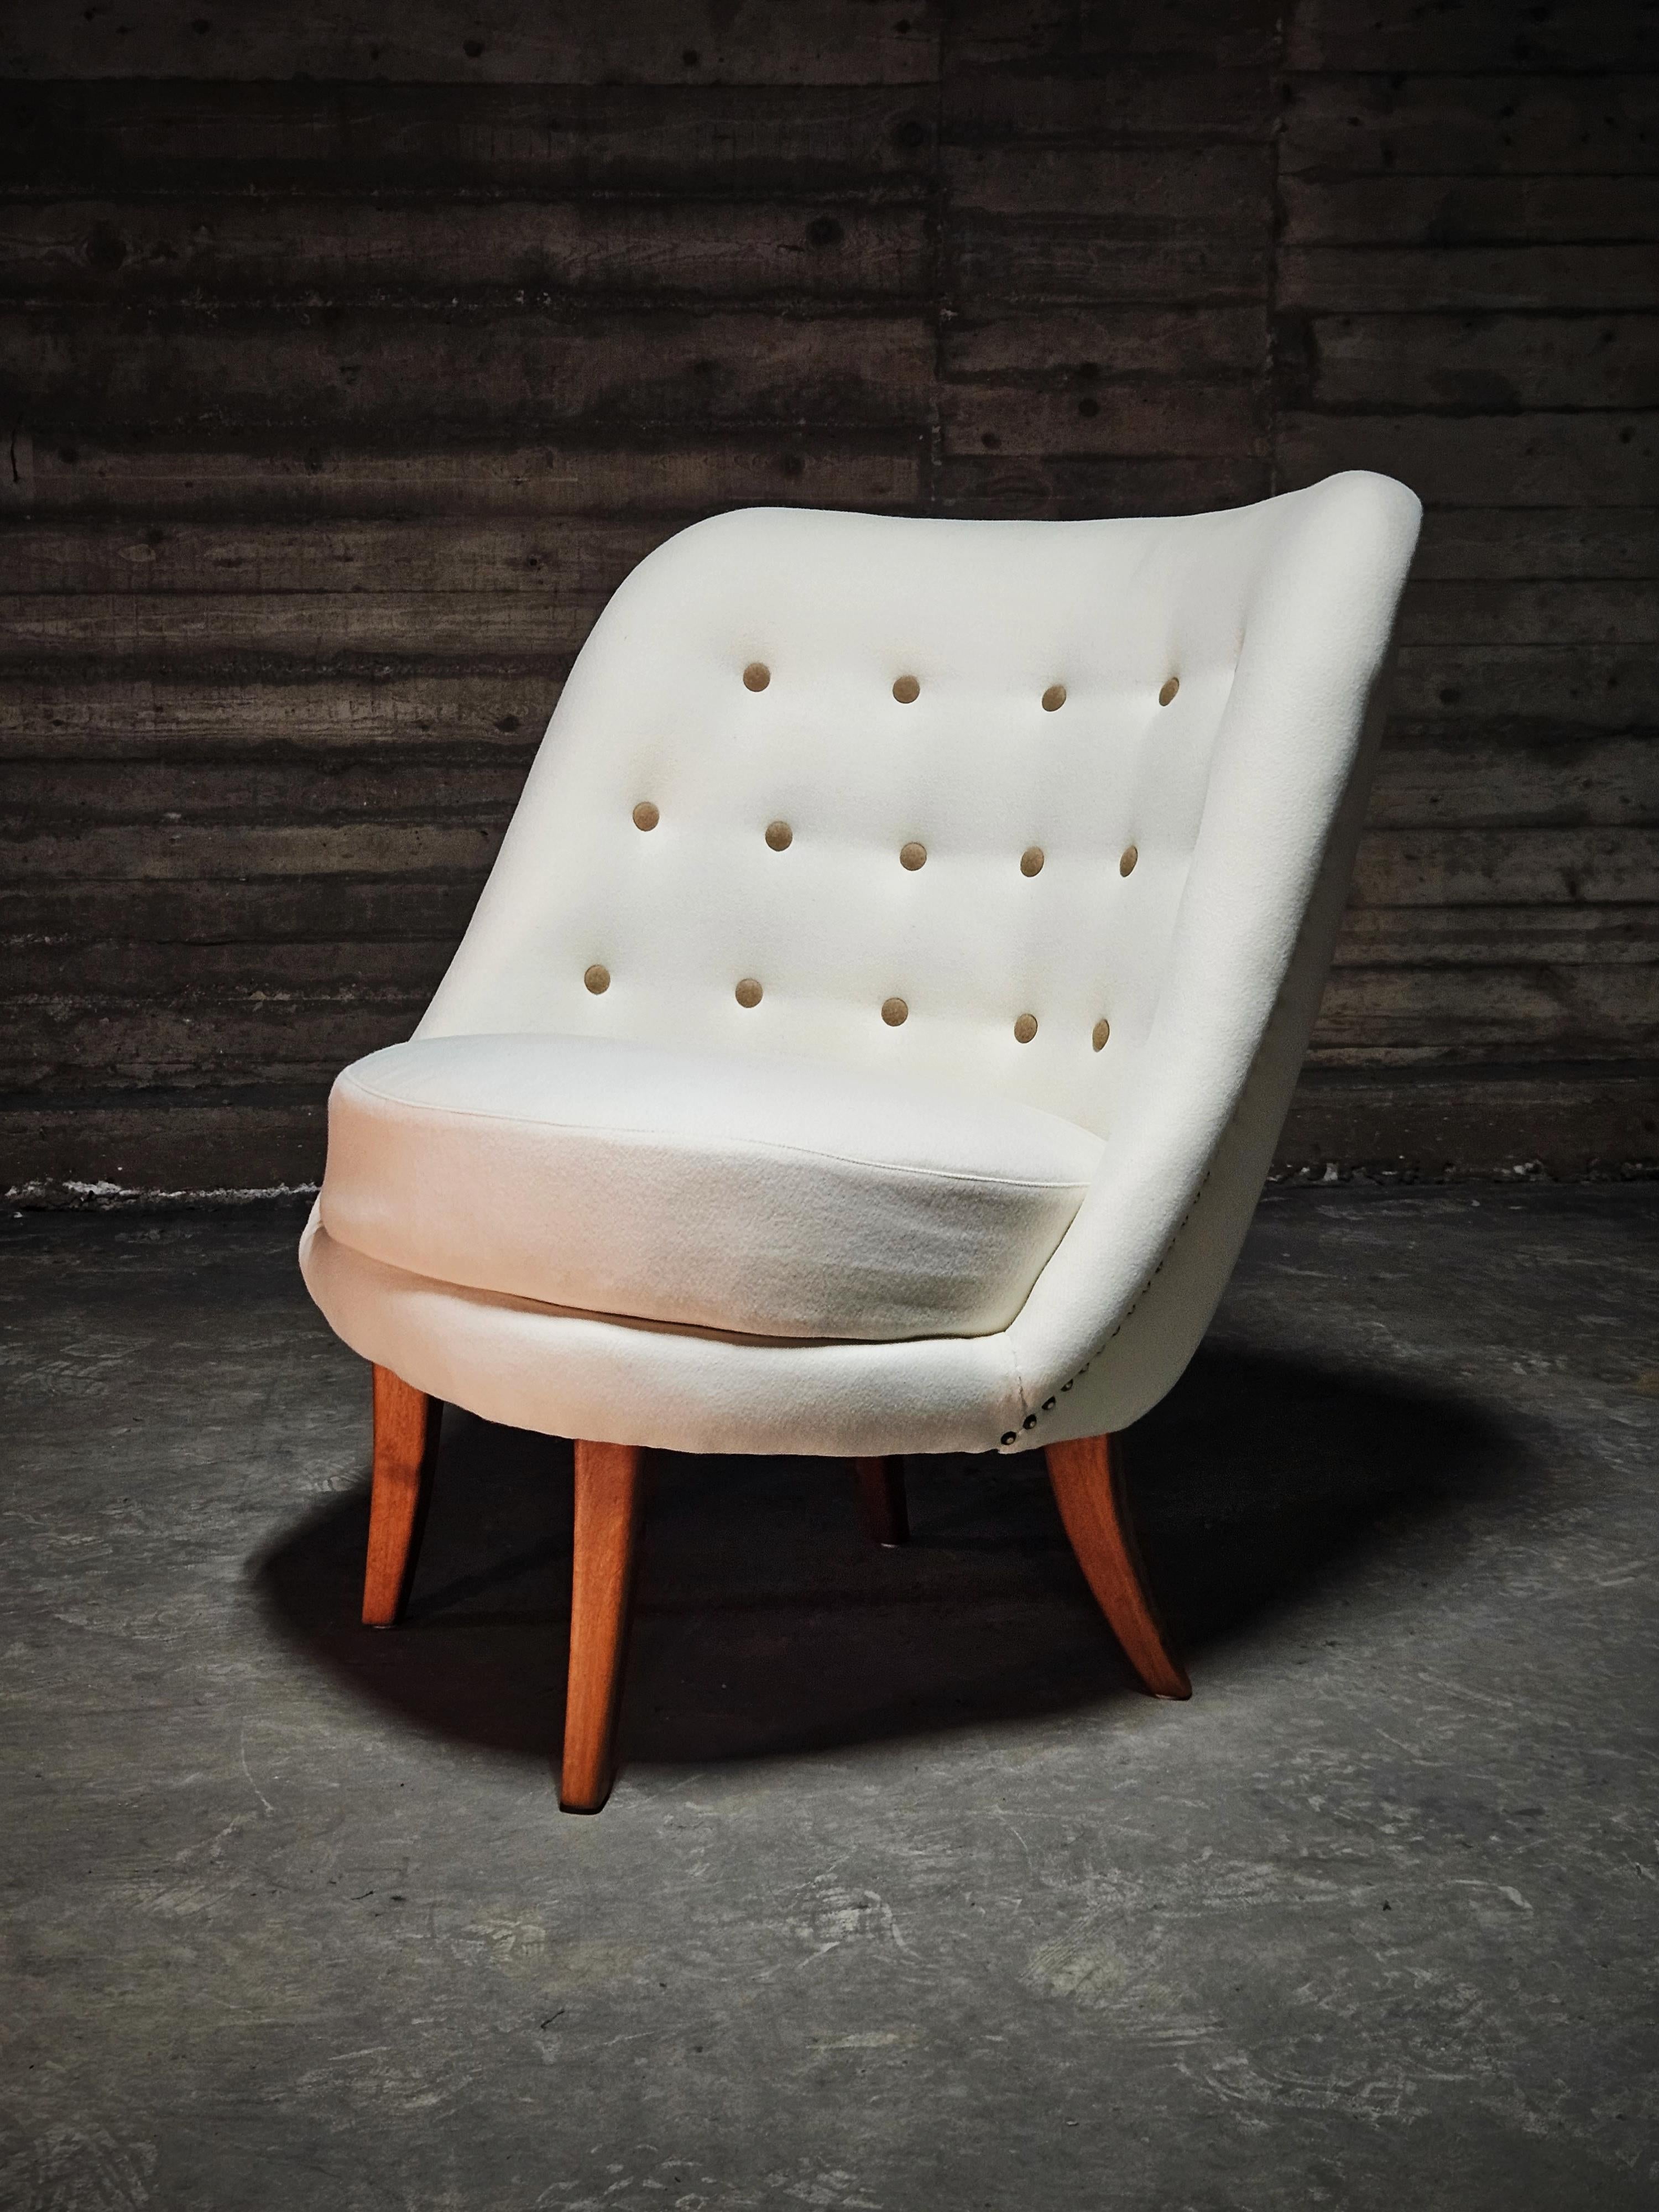 Chaise longue asymétrique moderne scandinave, conçue par Arne Norell dans les années 1950. 

Rembourré avec de la laine blanche de haute qualité et des boutons en laine brune. 